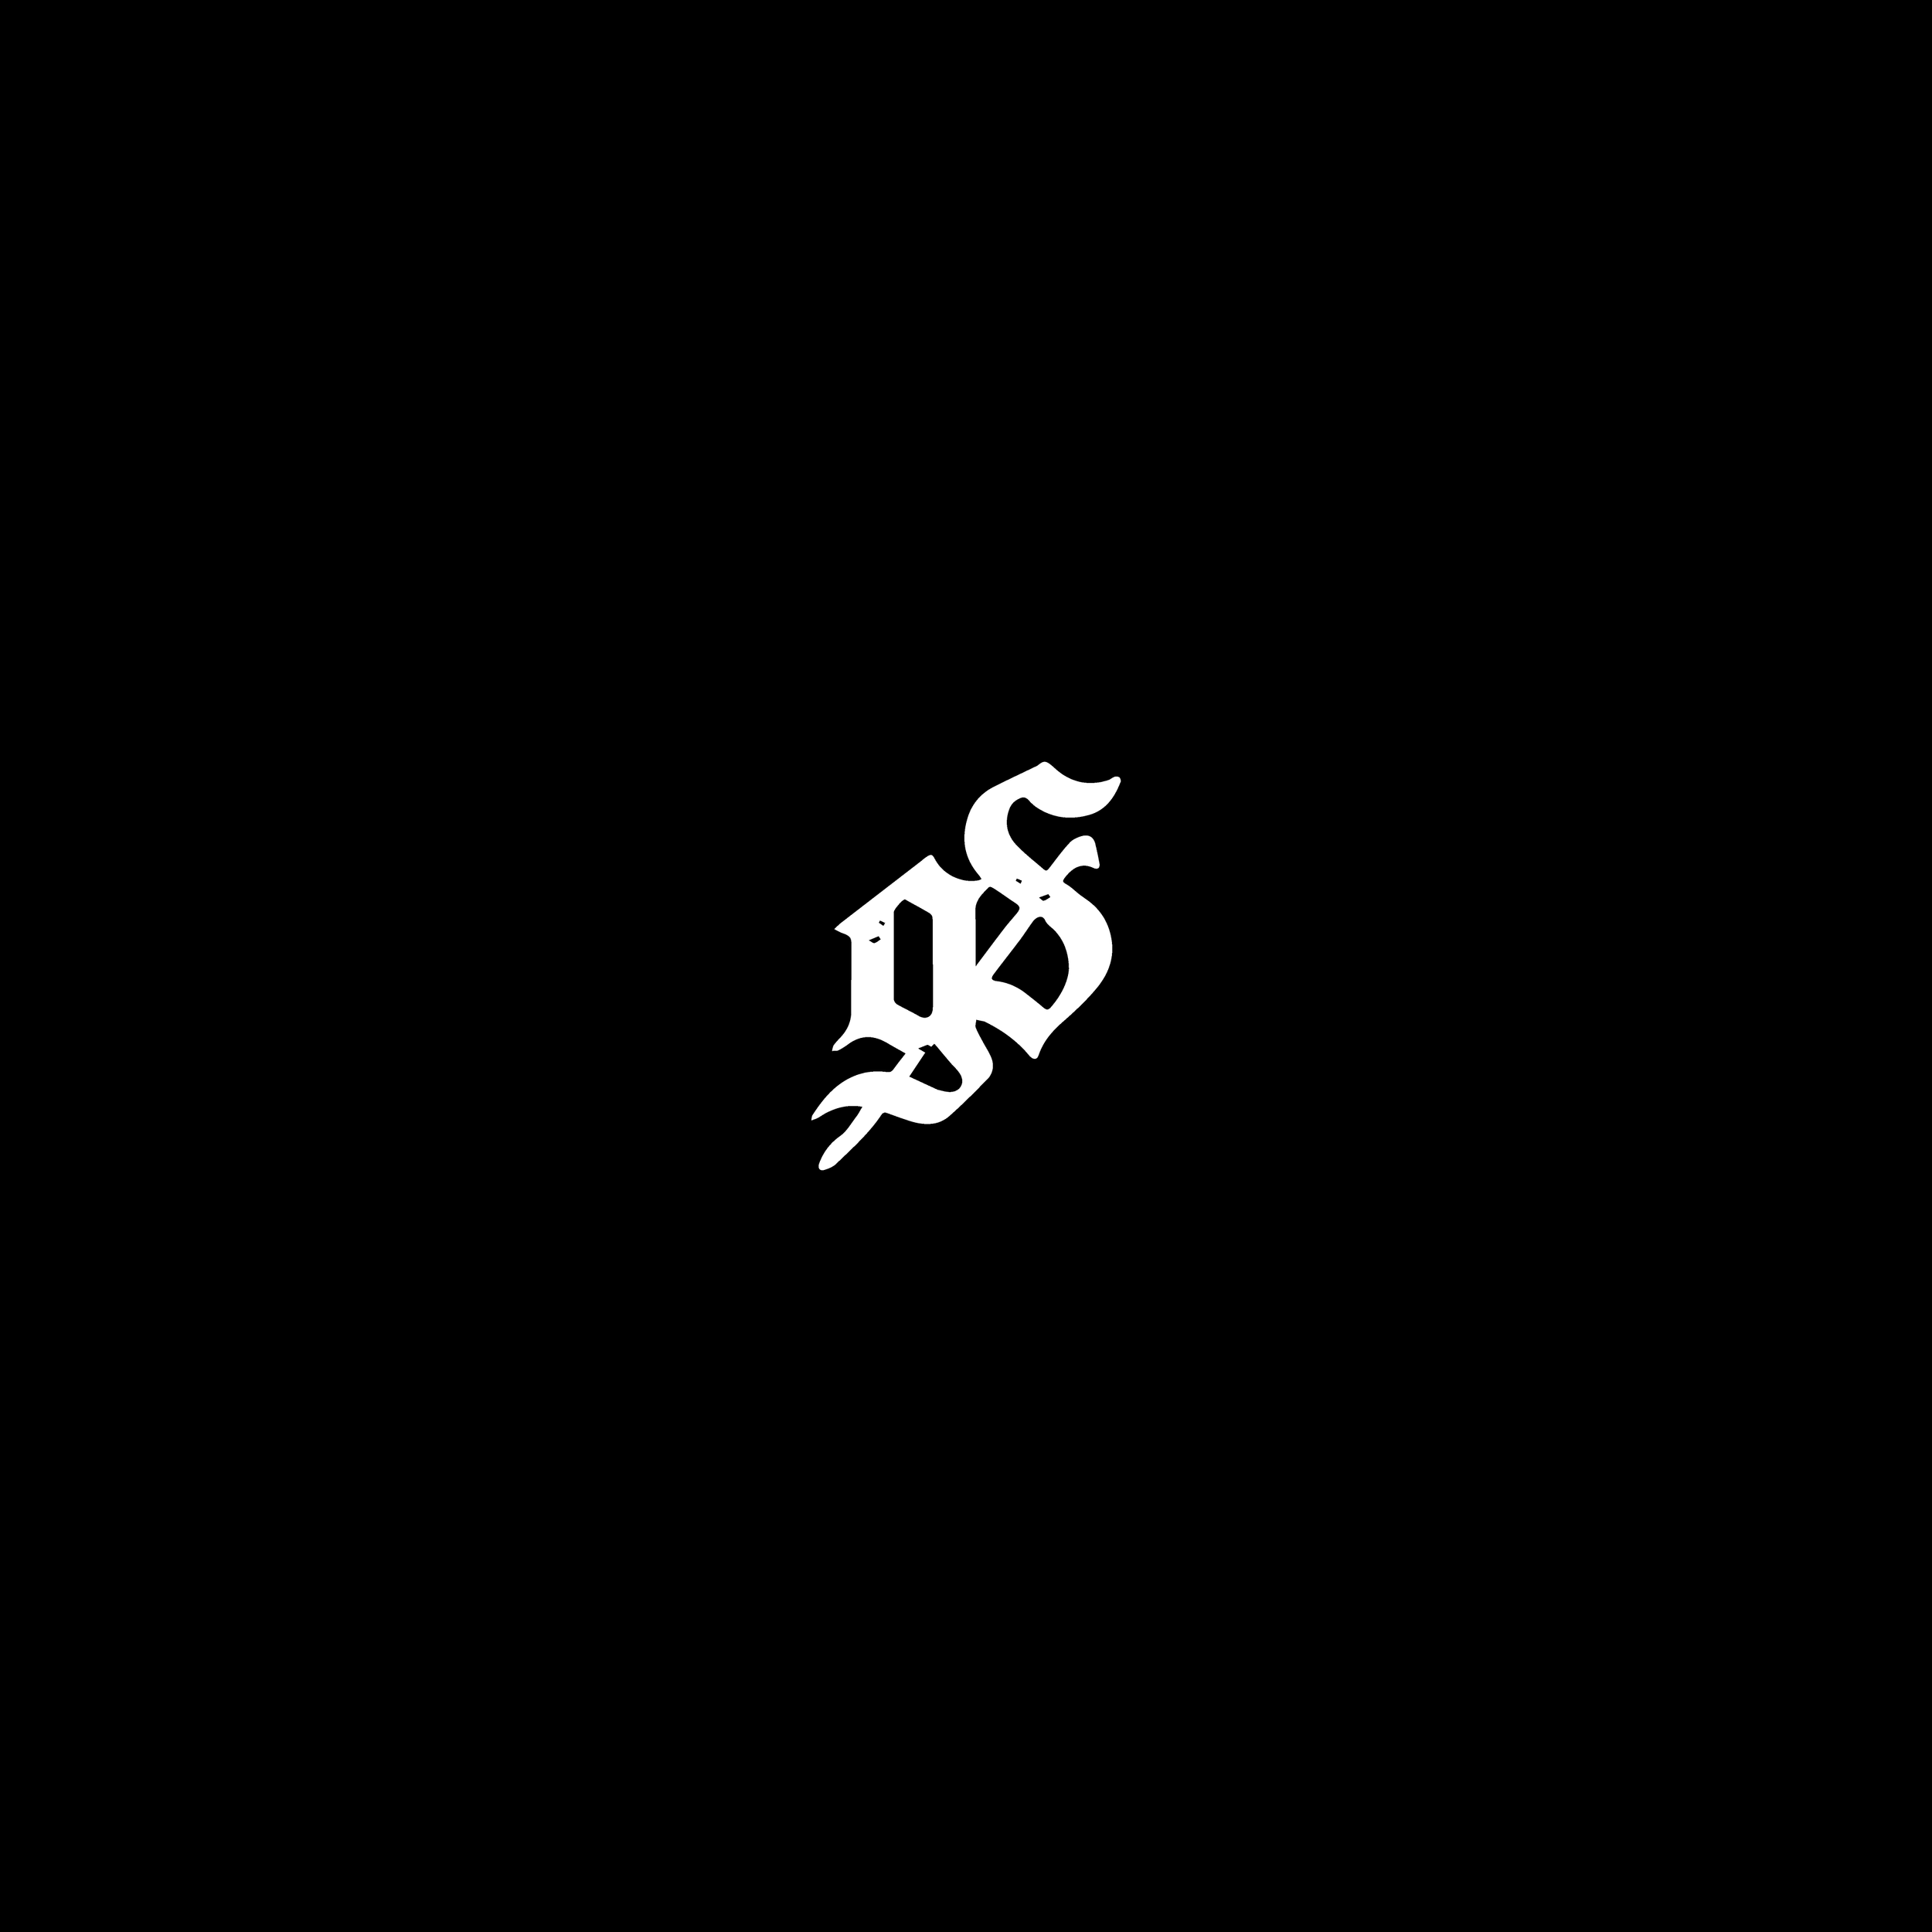 Logos-08.png